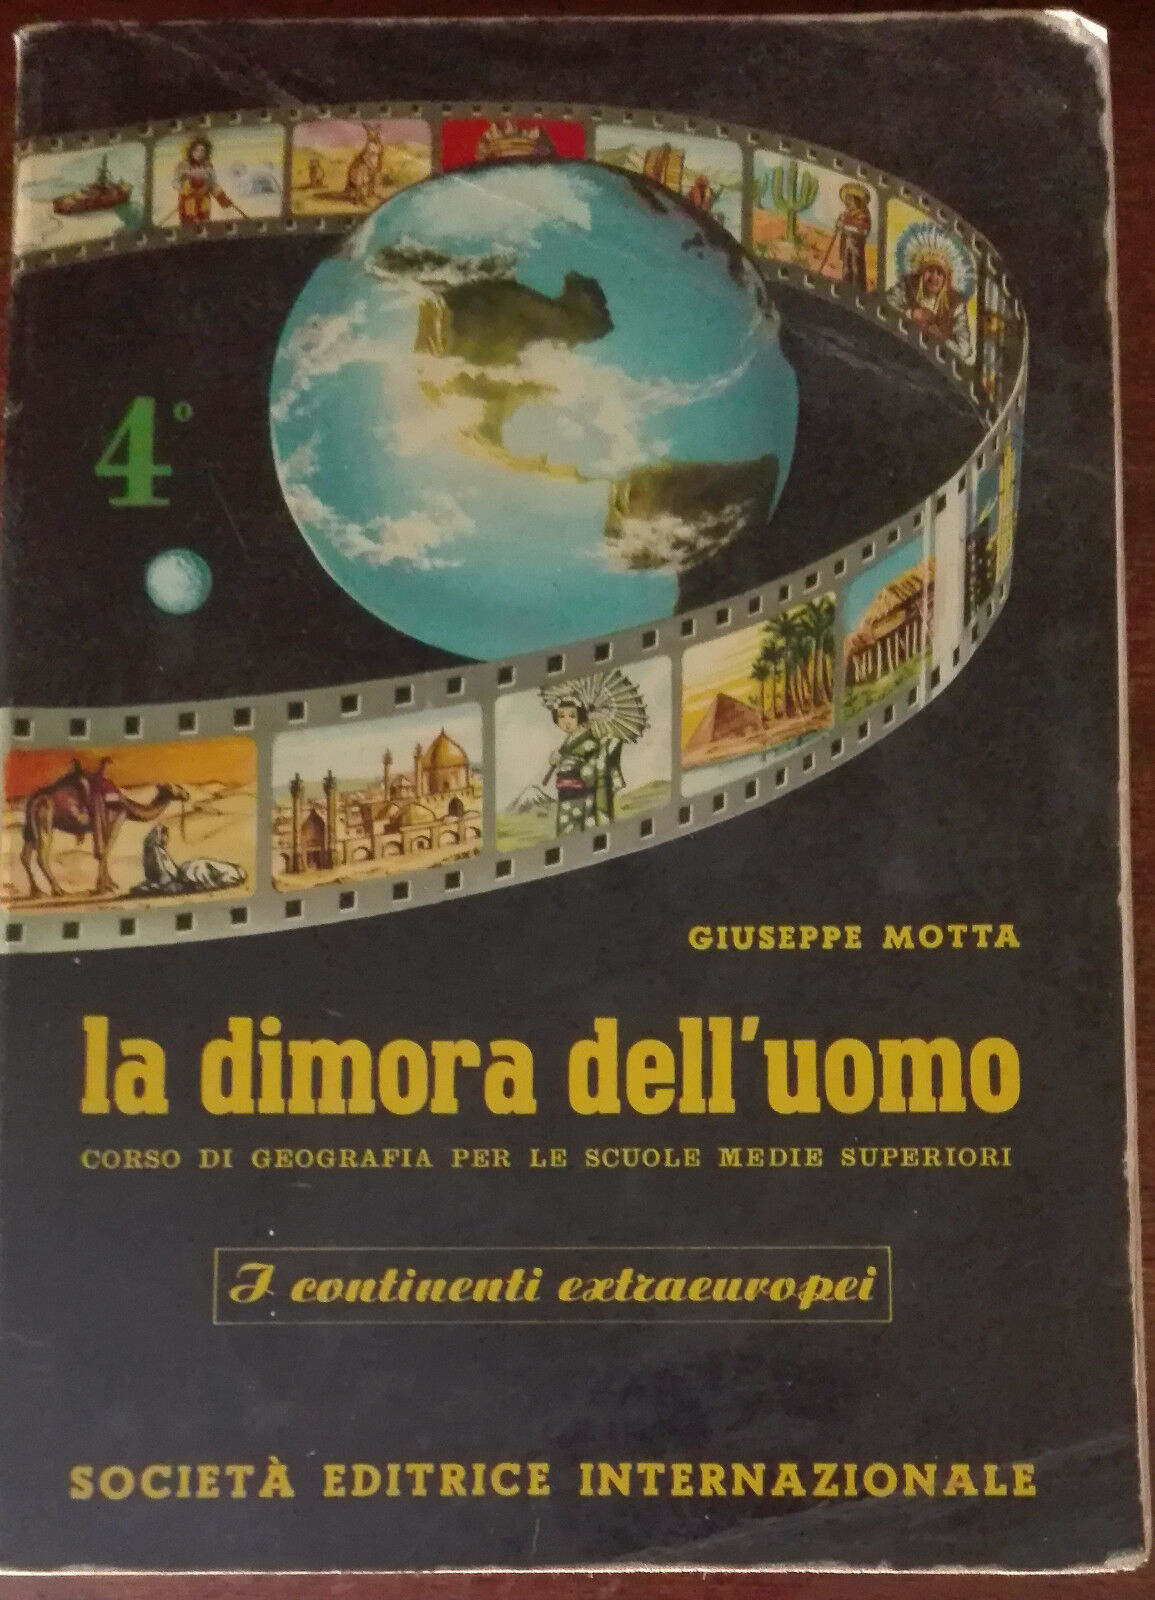 La dimora dell'uomo 4? - Giuseppe Motta - Societ? editrice internazionale,1969-A